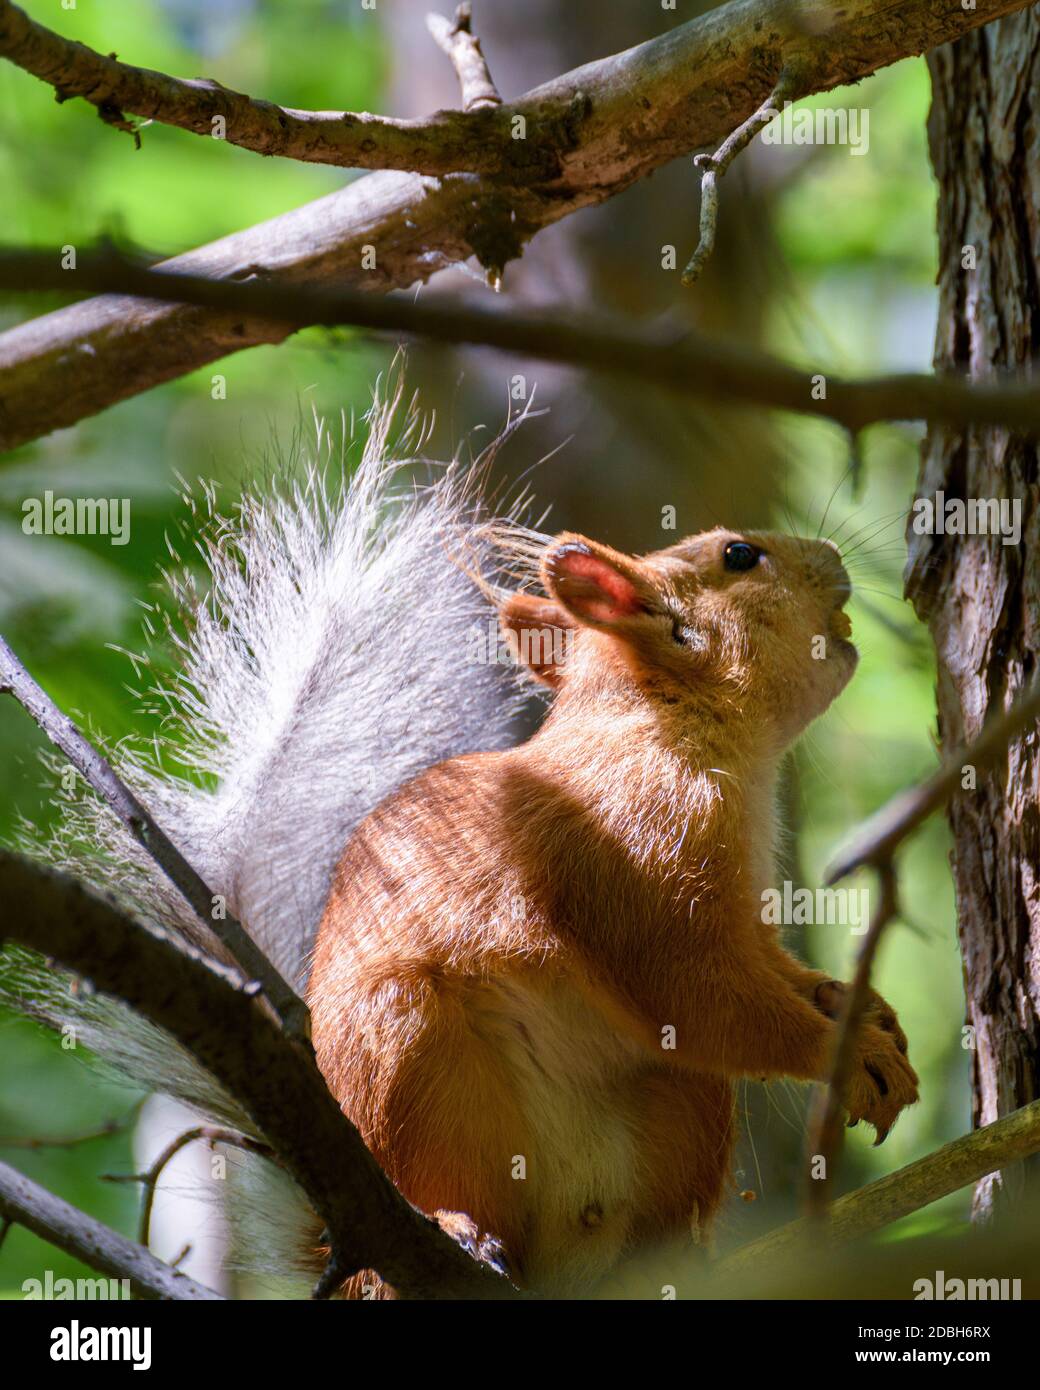 Ein kleines Eichhörnchen sitzt auf einem Baum zwischen den Blättern,  beleuchtet von der Sonne Stockfotografie - Alamy